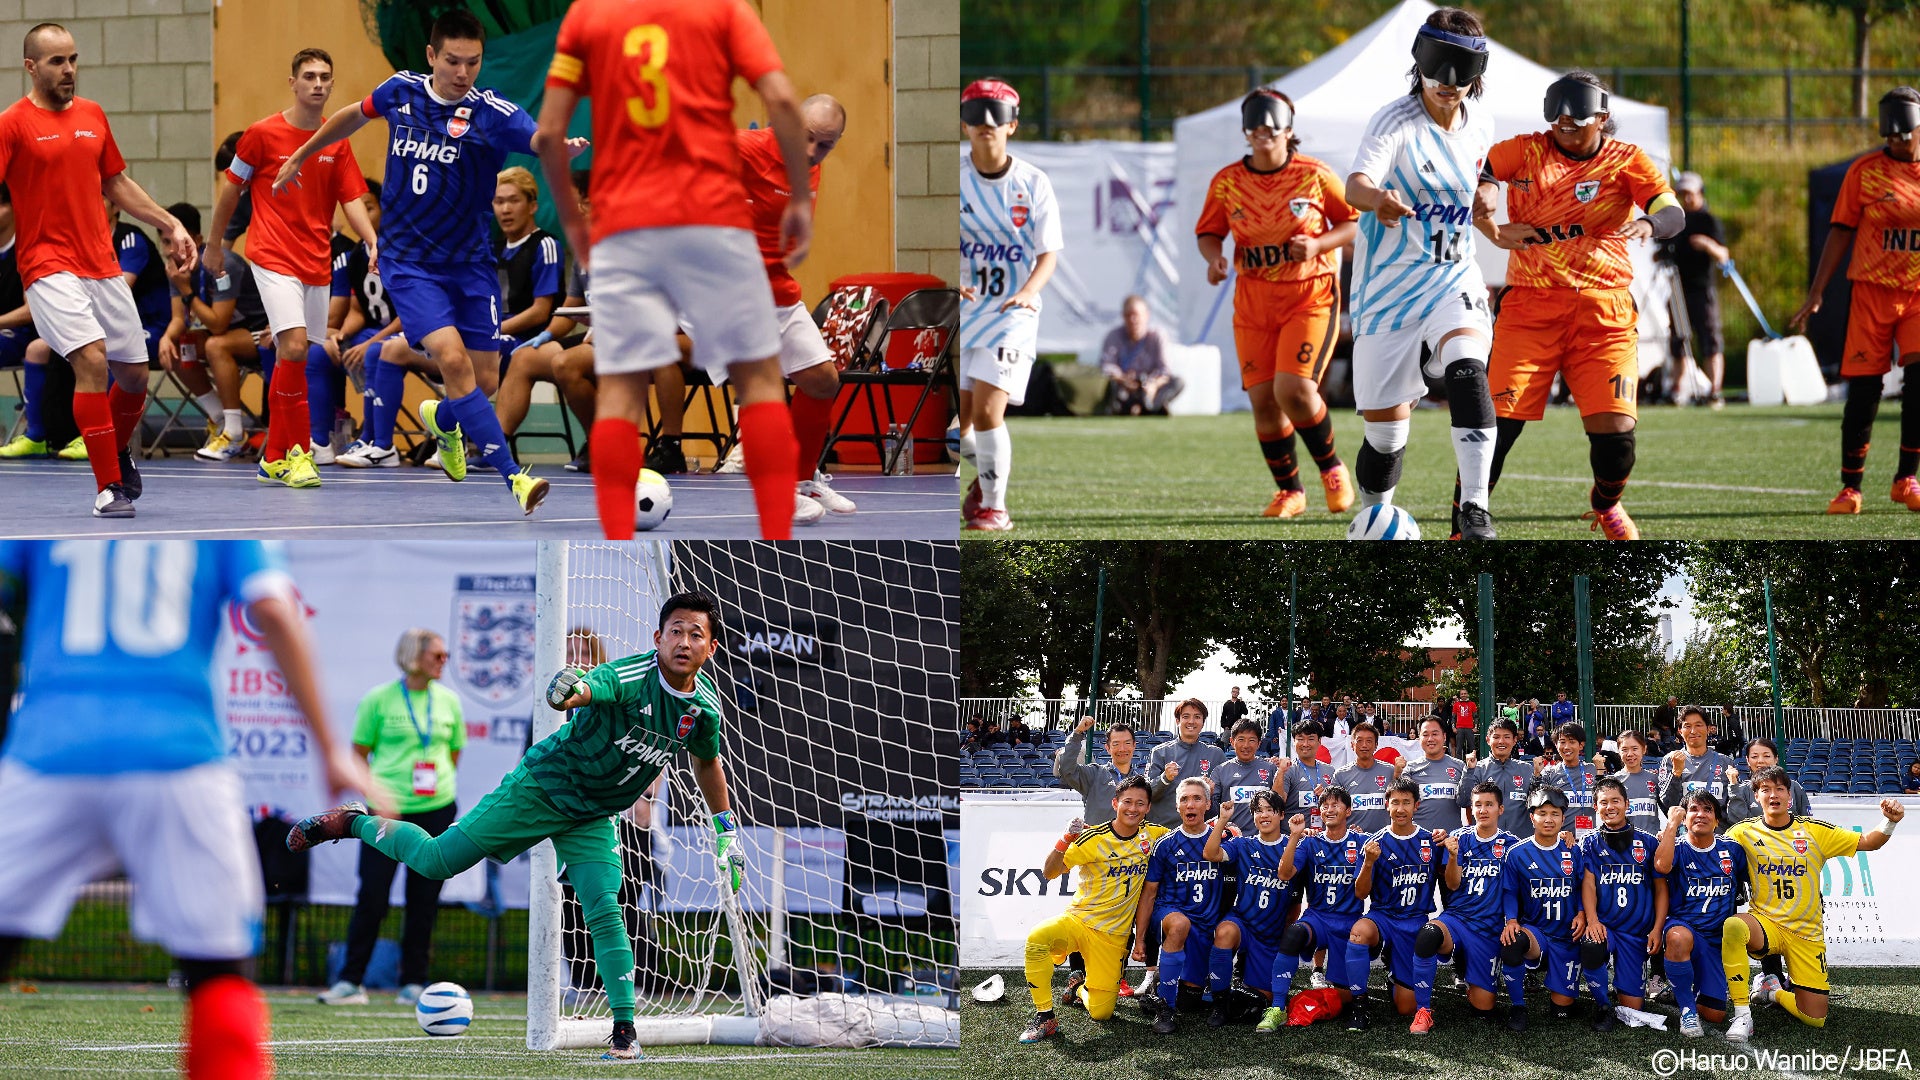 KPMGジャパン、ブラインドサッカーおよびロービジョンフットサル日本代表ユニフォームの年間スポンサーに決定